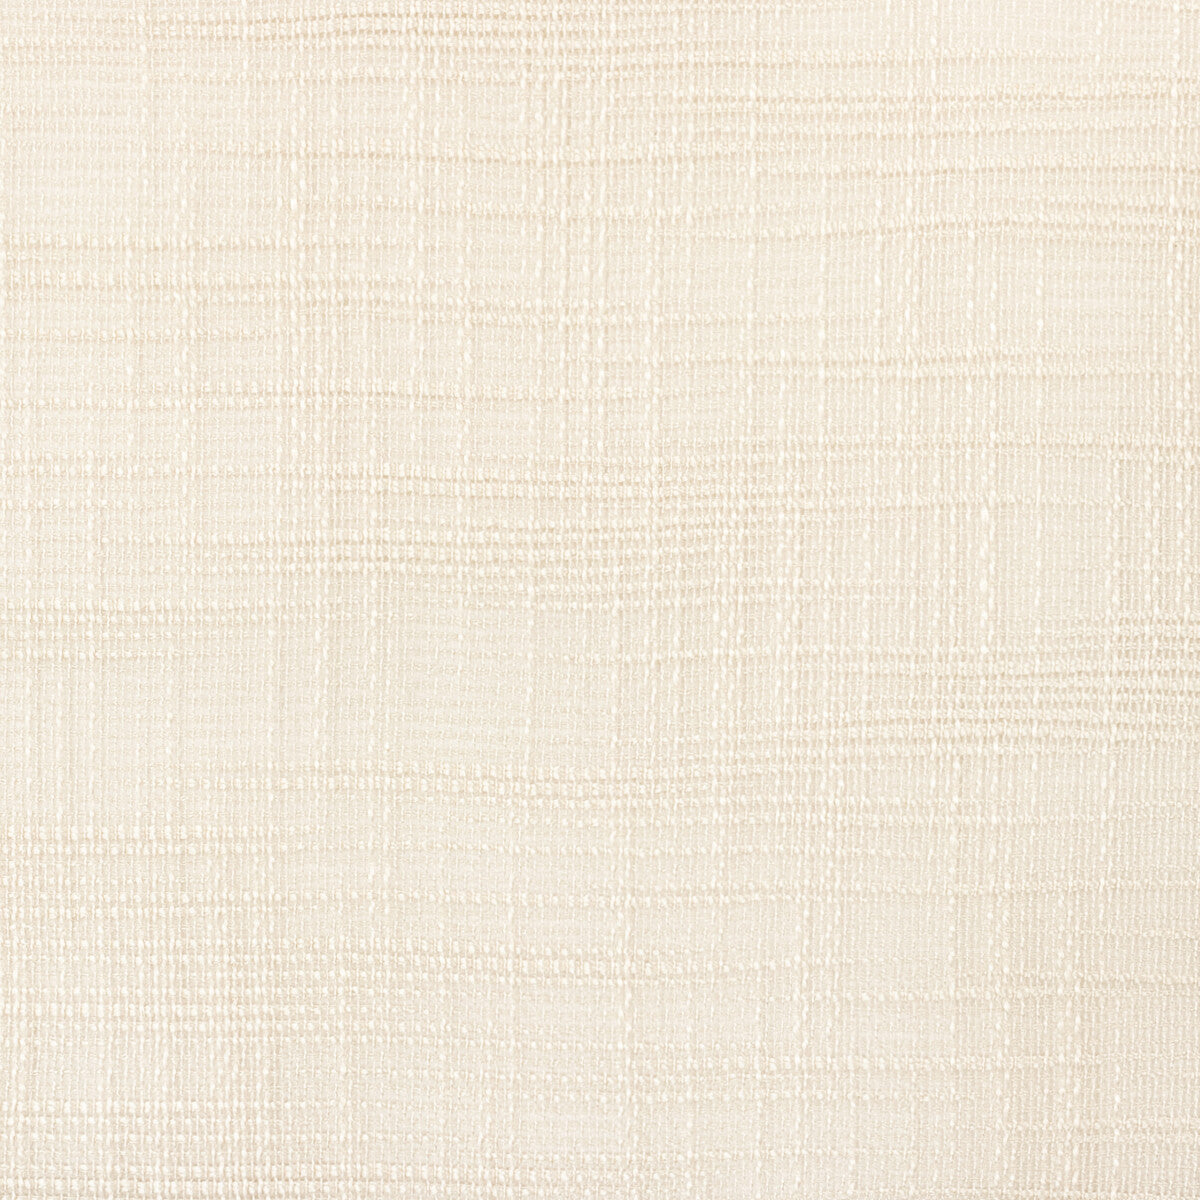 Kravet Basics fabric in 4670-1 color - pattern 4670.1.0 - by Kravet Basics